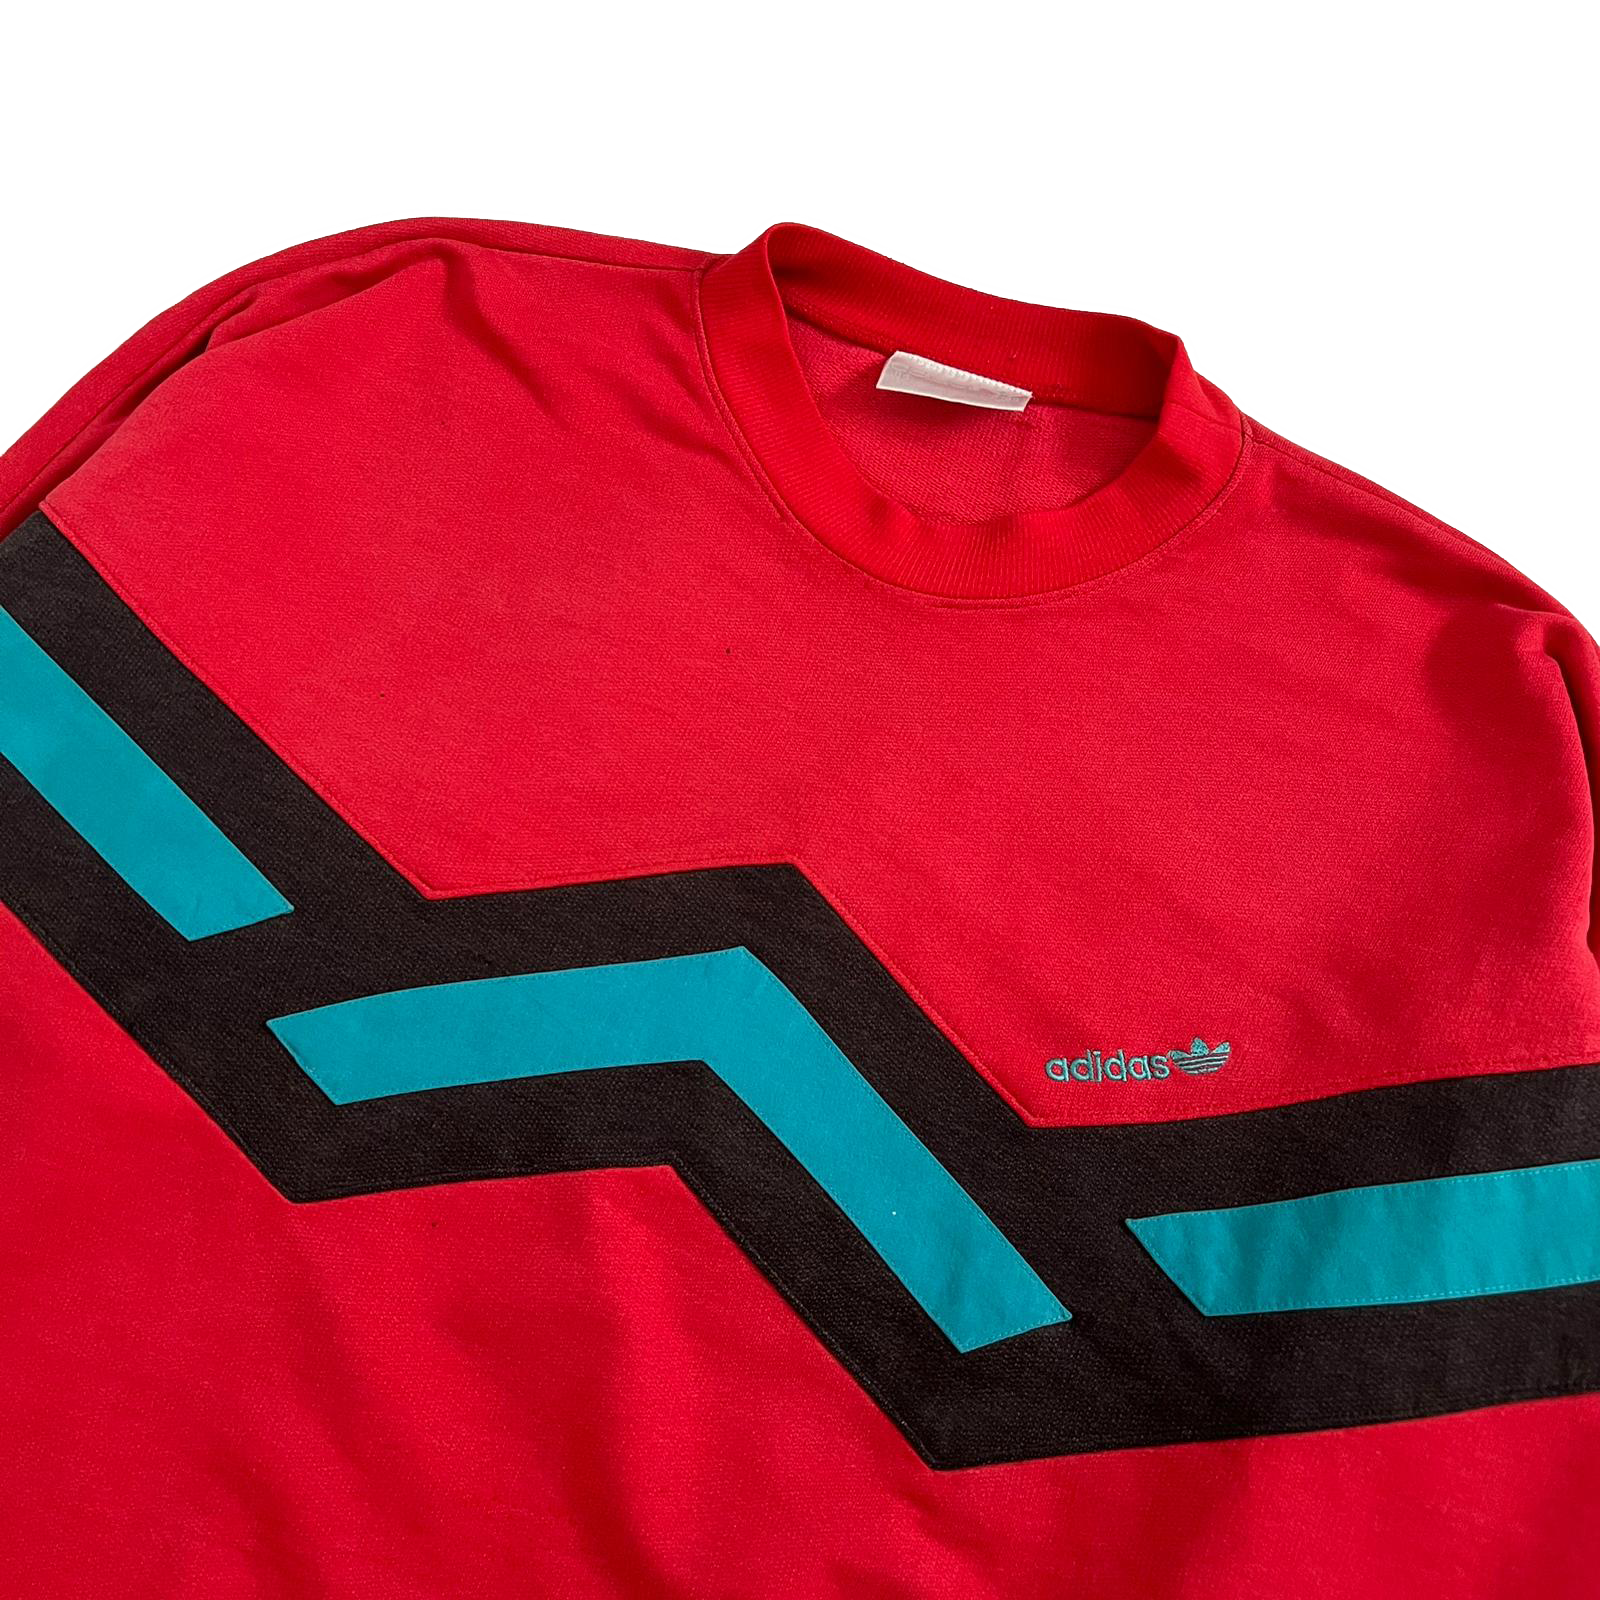 90's Adidas sweatshirt